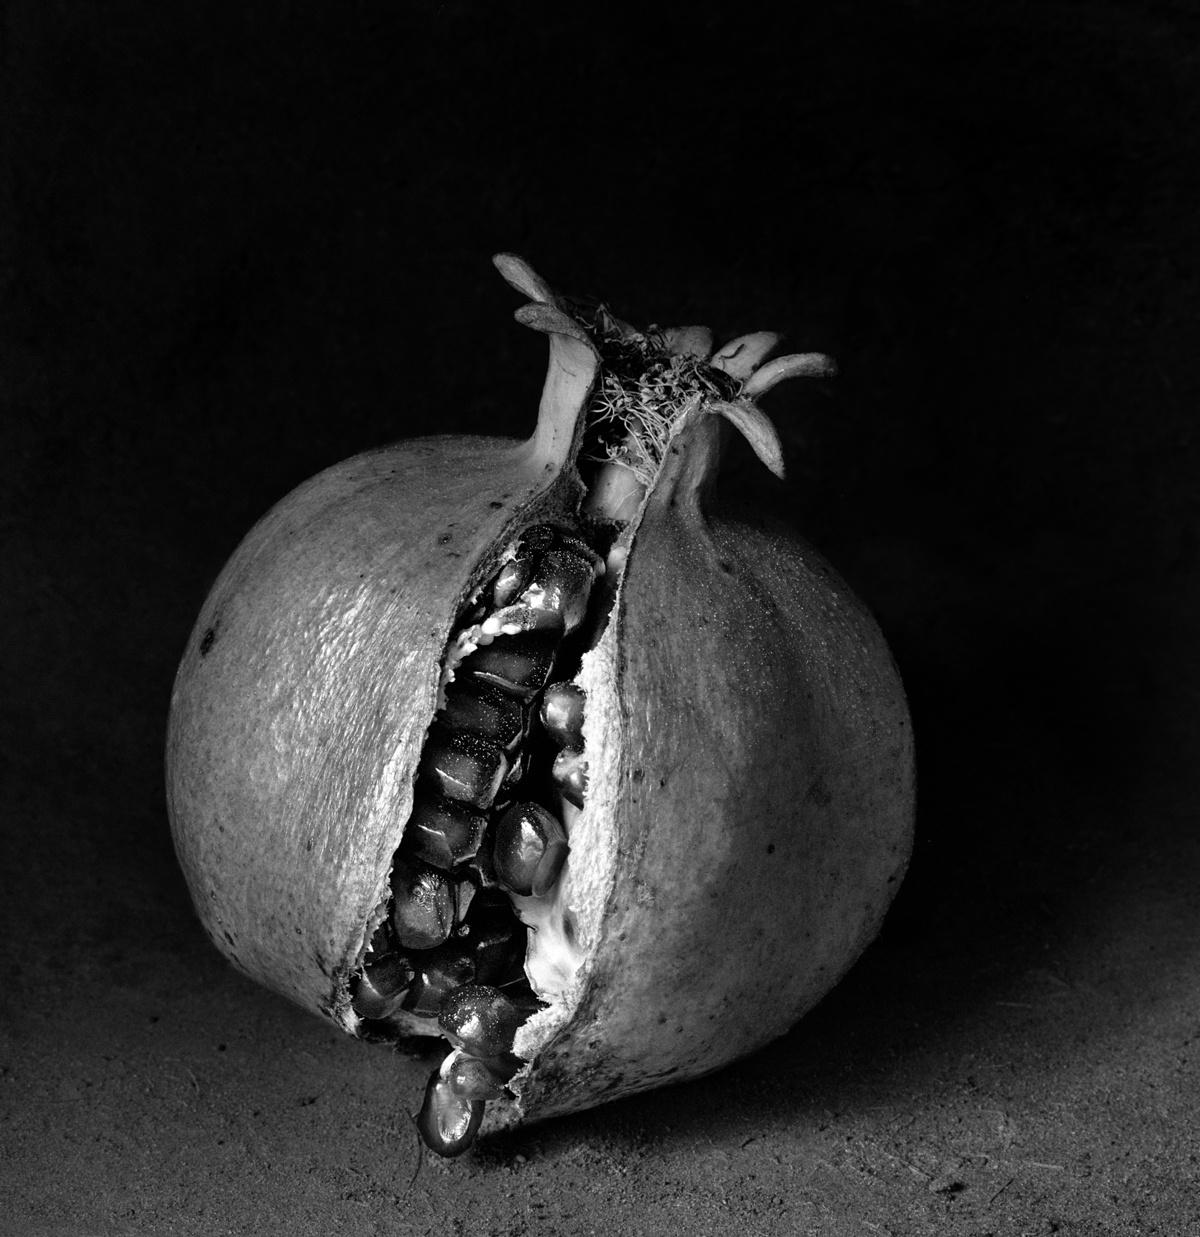 Con Corona, Mexique, 2000 - Flor Garduño (Photographie en noir et blanc)